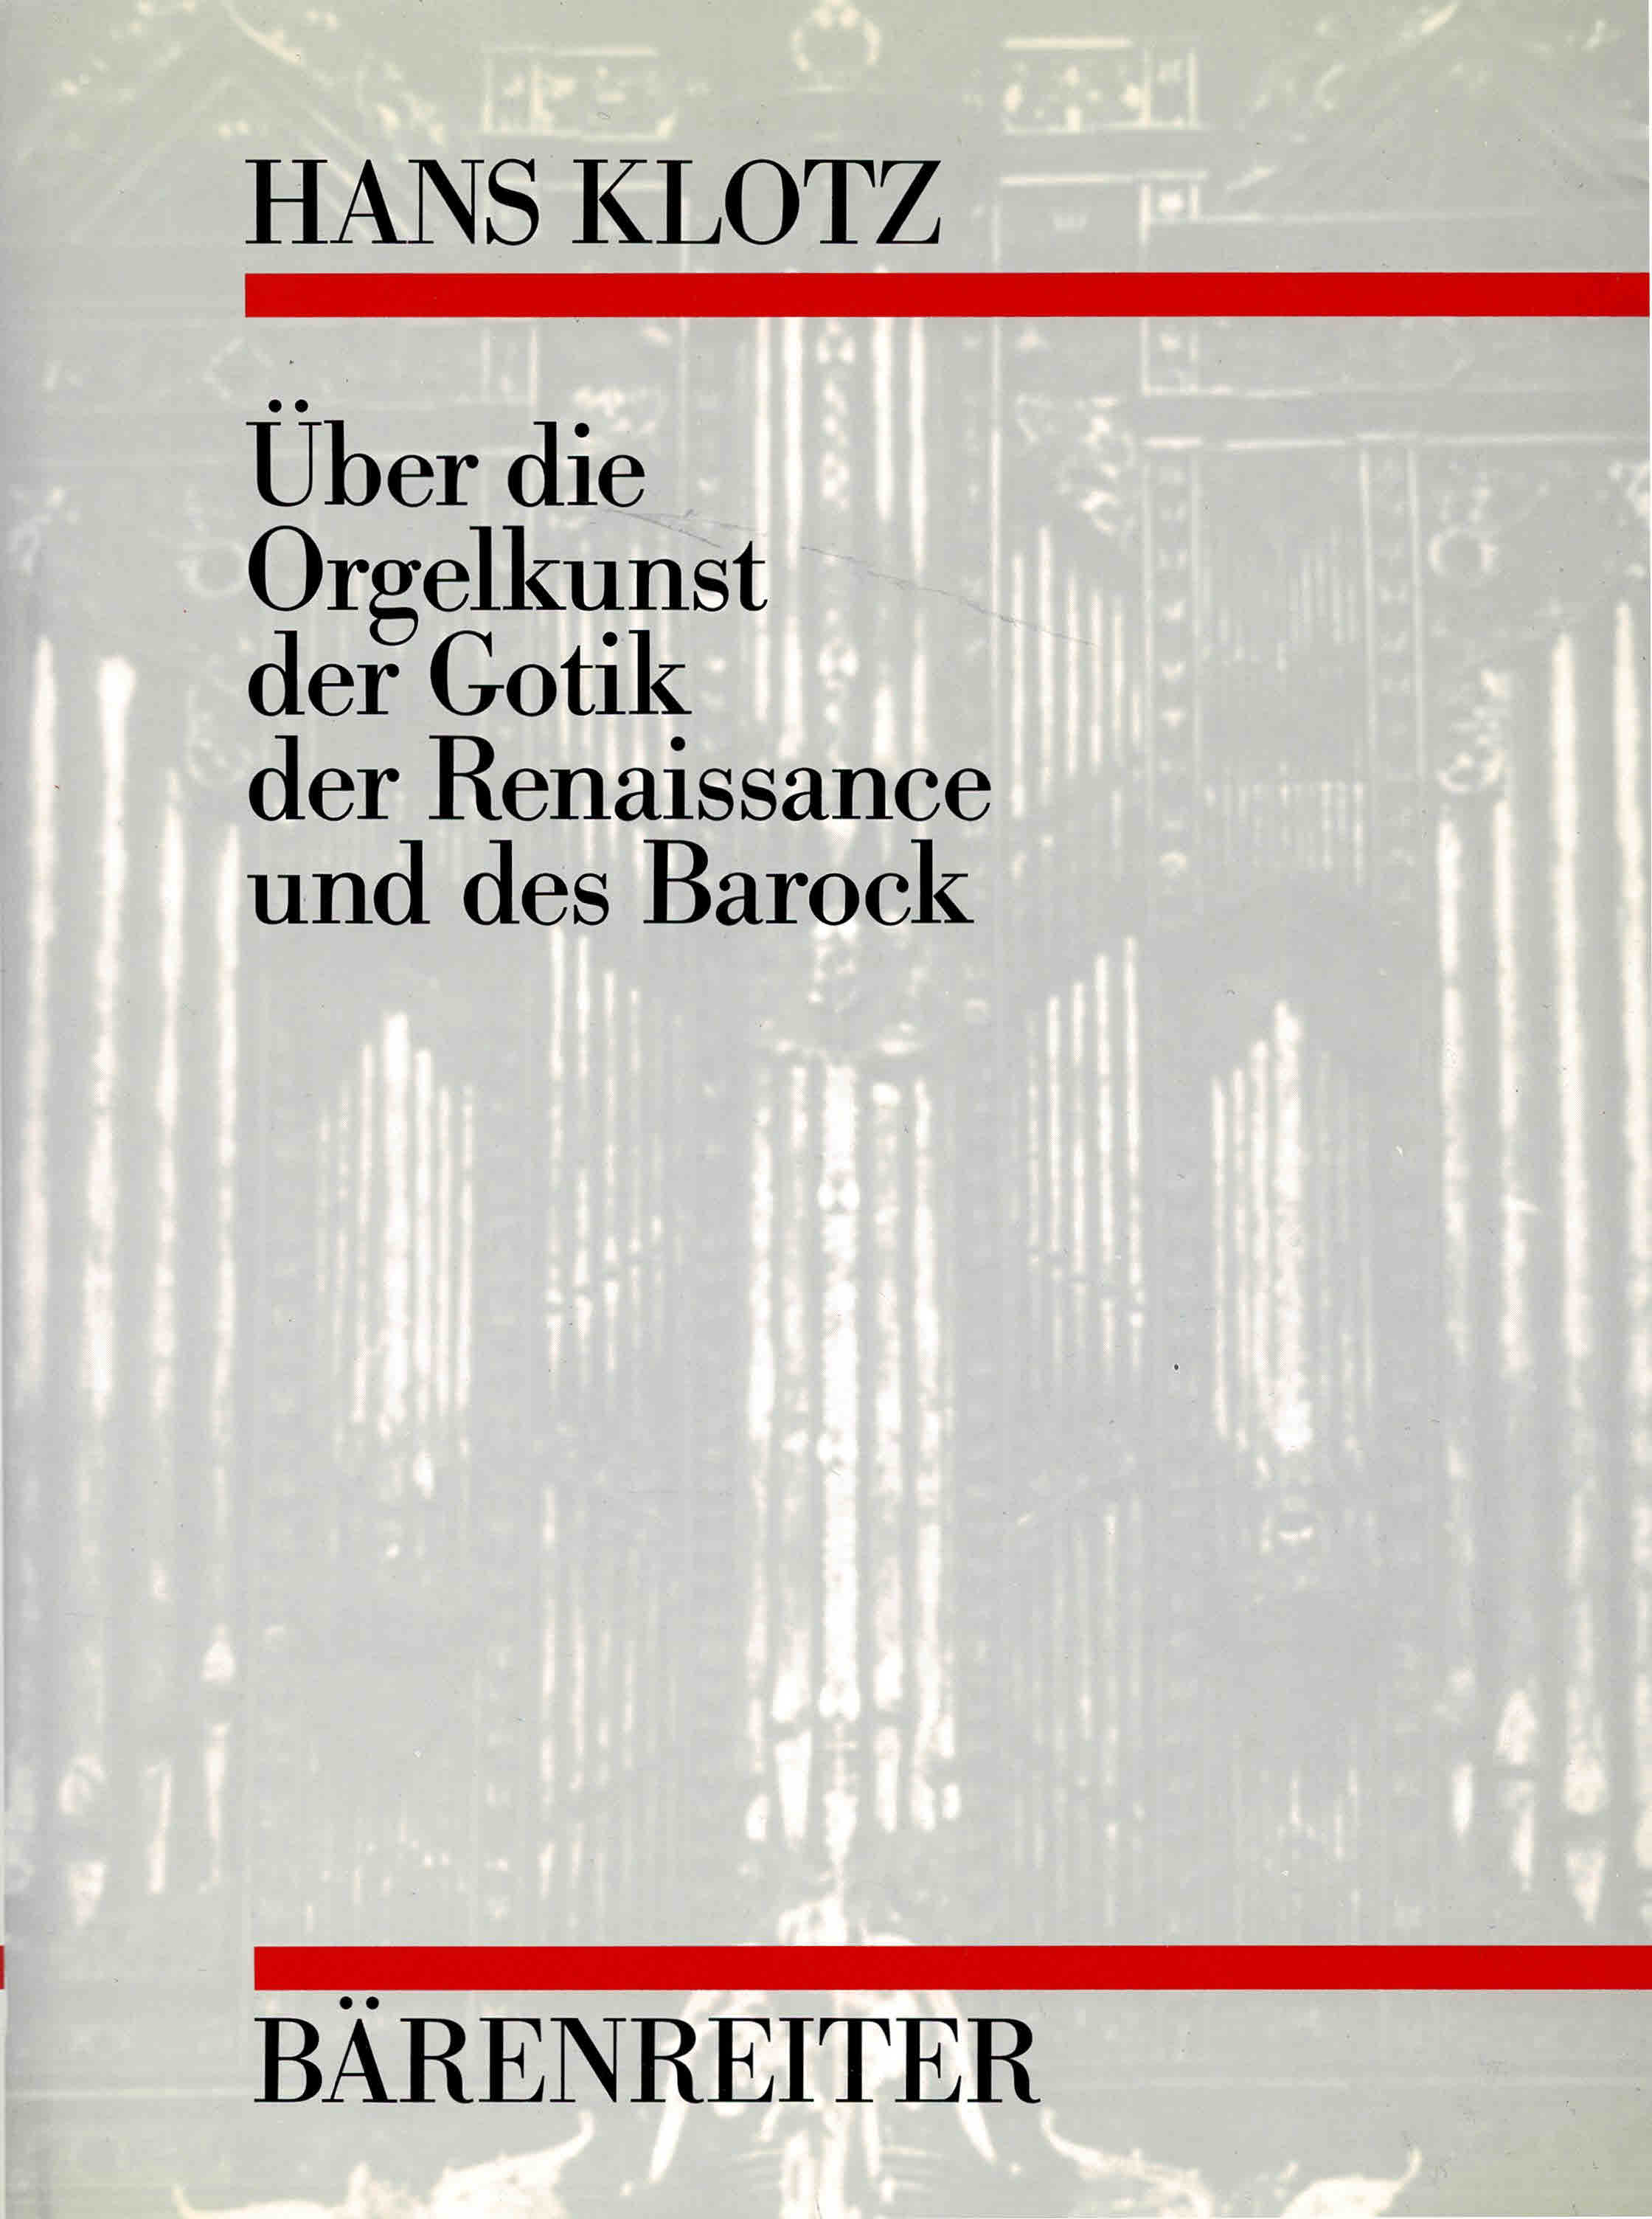 Über die Orgelkunst der Gotik, der Renaissance und des Barock Musik (Disposition. Mixturen. Mensuren. Registrierung. Gebrauch der Klaviere) - 1986 - - Klotz, Hans